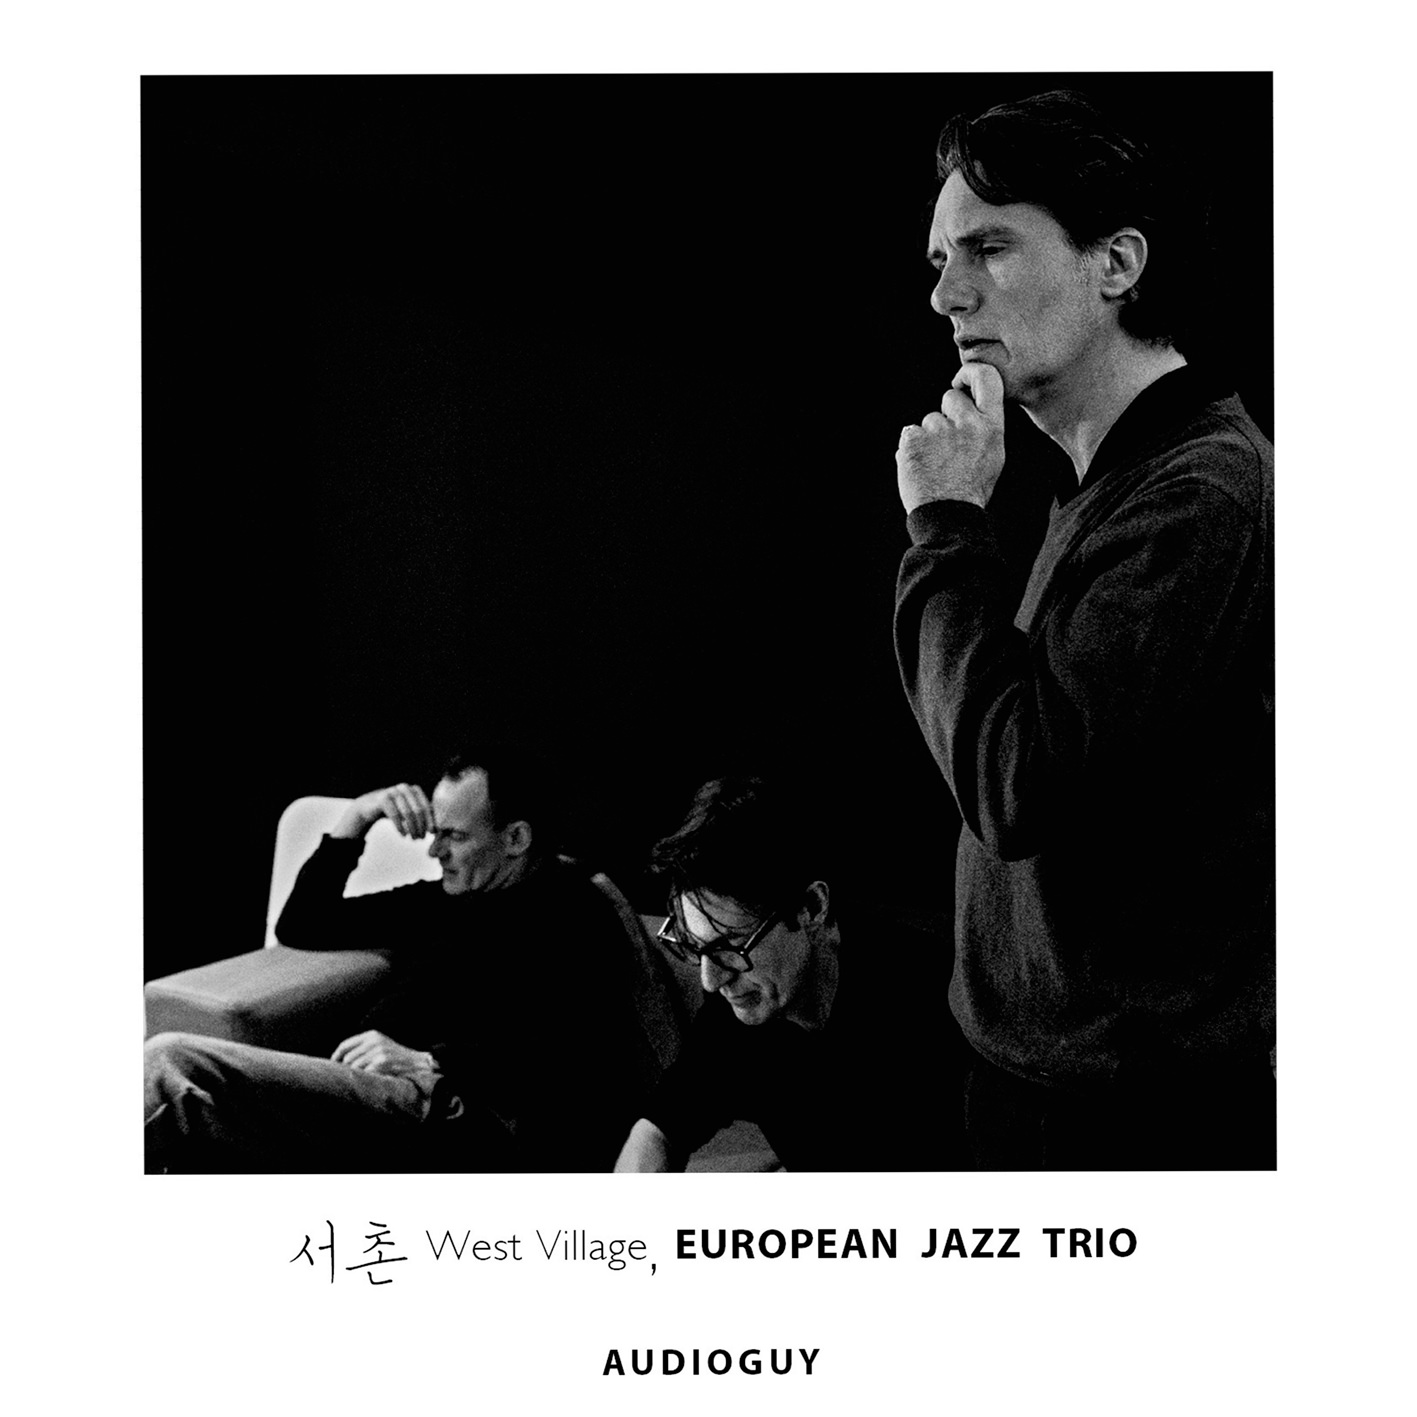 European Jazz Trio - West Village (2018) [AcousticSounds FLAC 24bit/96kHz]